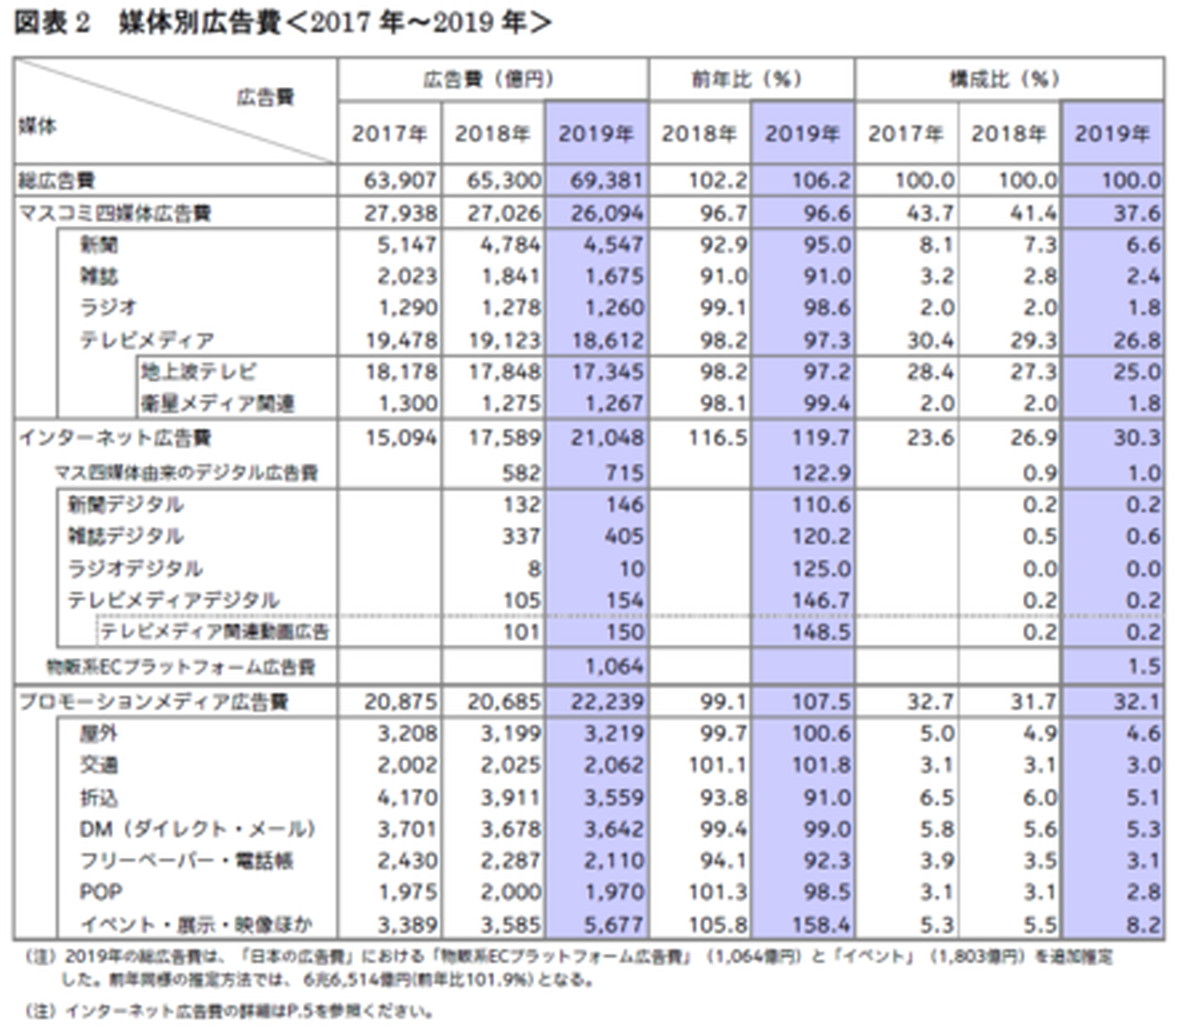 日本の総広告費は6兆9 381億円 8年連続のプラス成長 電通が 19年 日本の広告費 レポートを公表 Ecのミカタのニュース記事です